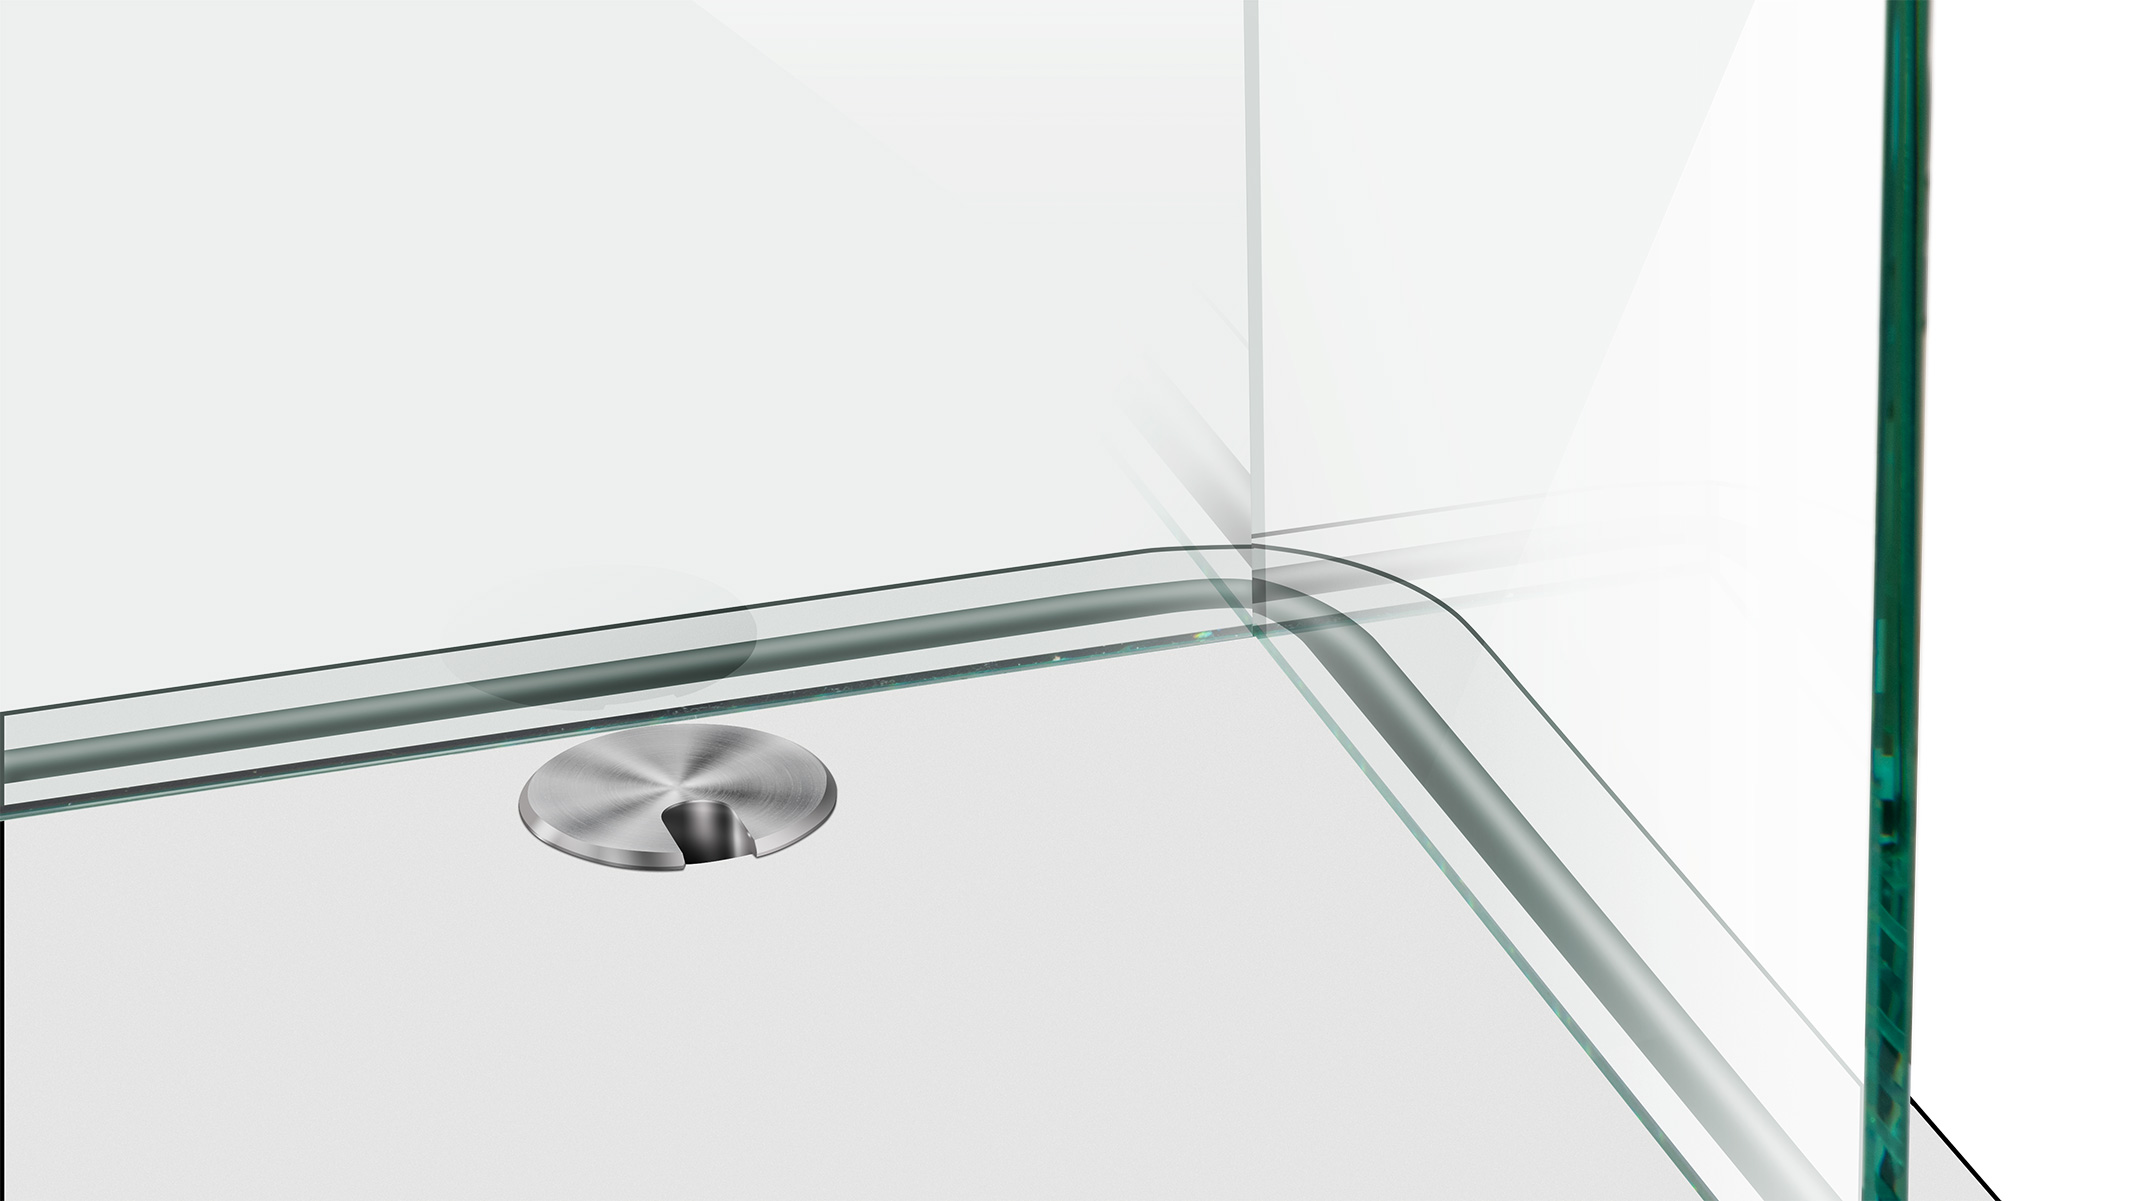 ESG Floatglas in U-Form, Höhe 30 cm, Stärke 6 mm, Kanten auf Gehrung UV verklebt, Kanten poliert,
Sonderausstattung für Ergolift Evolution 100 cm